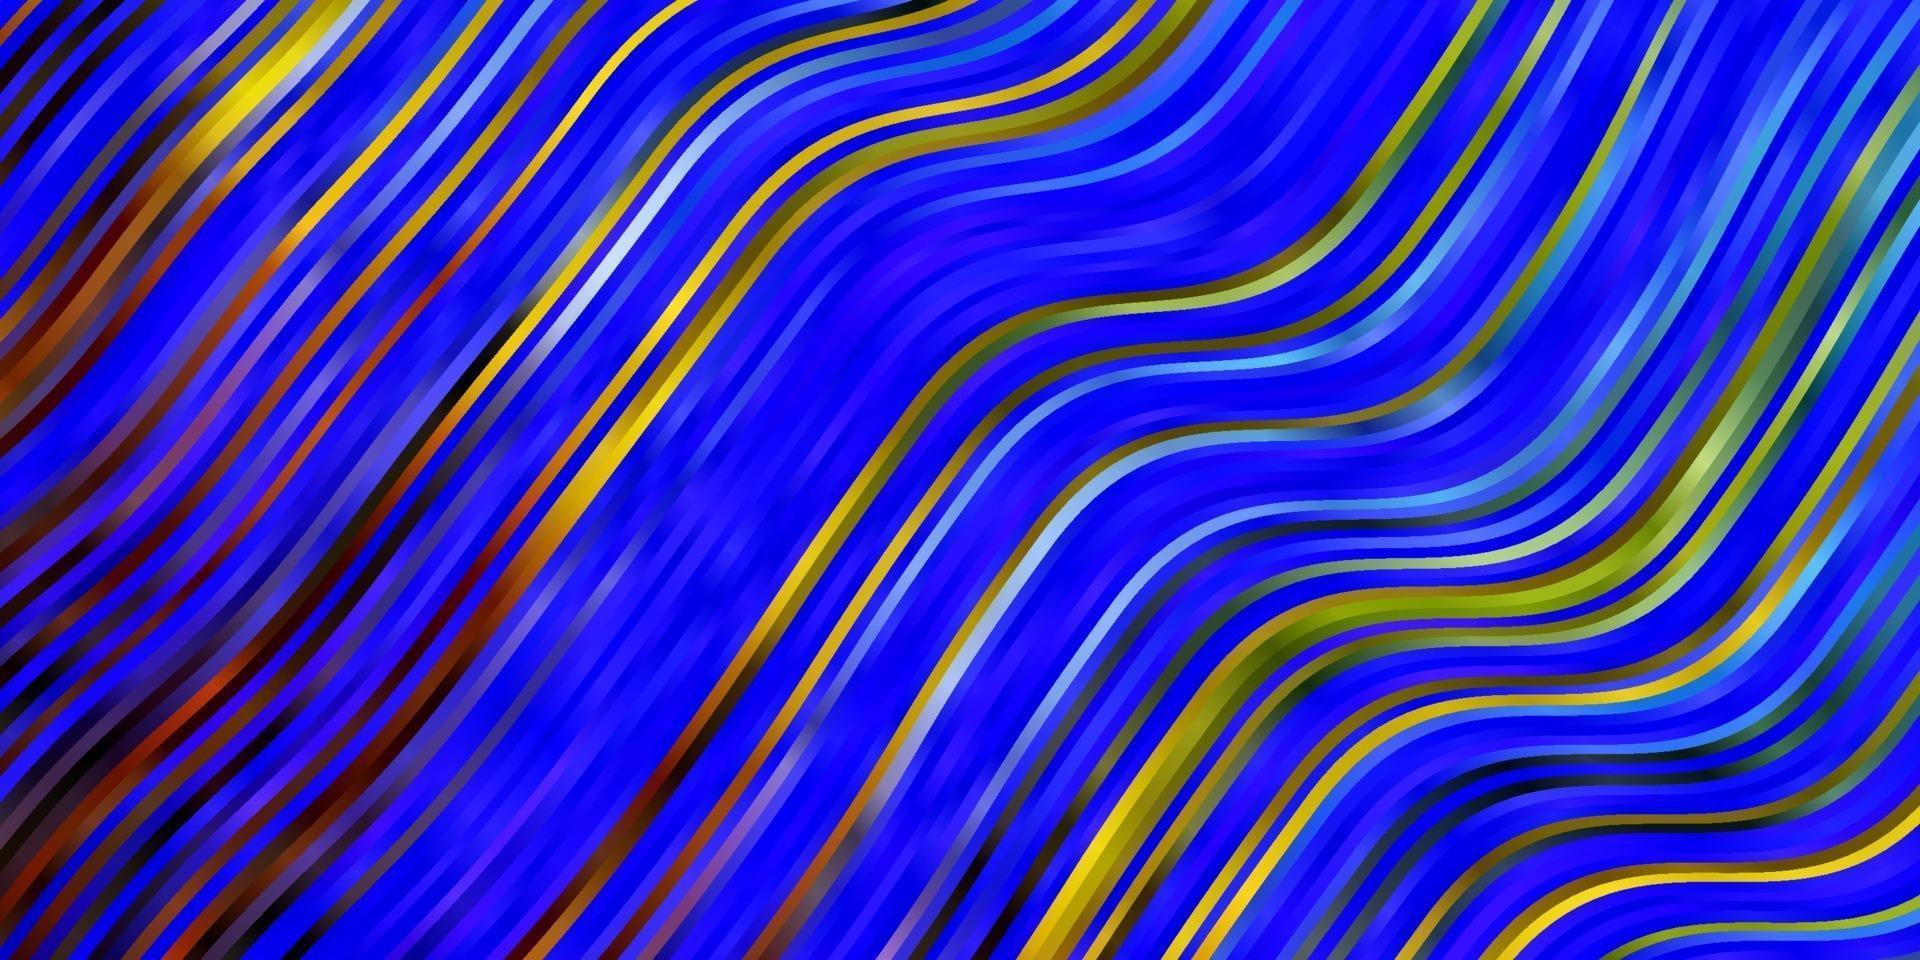 ljusblå, grön vektorbakgrund med böjda linjer. vektor